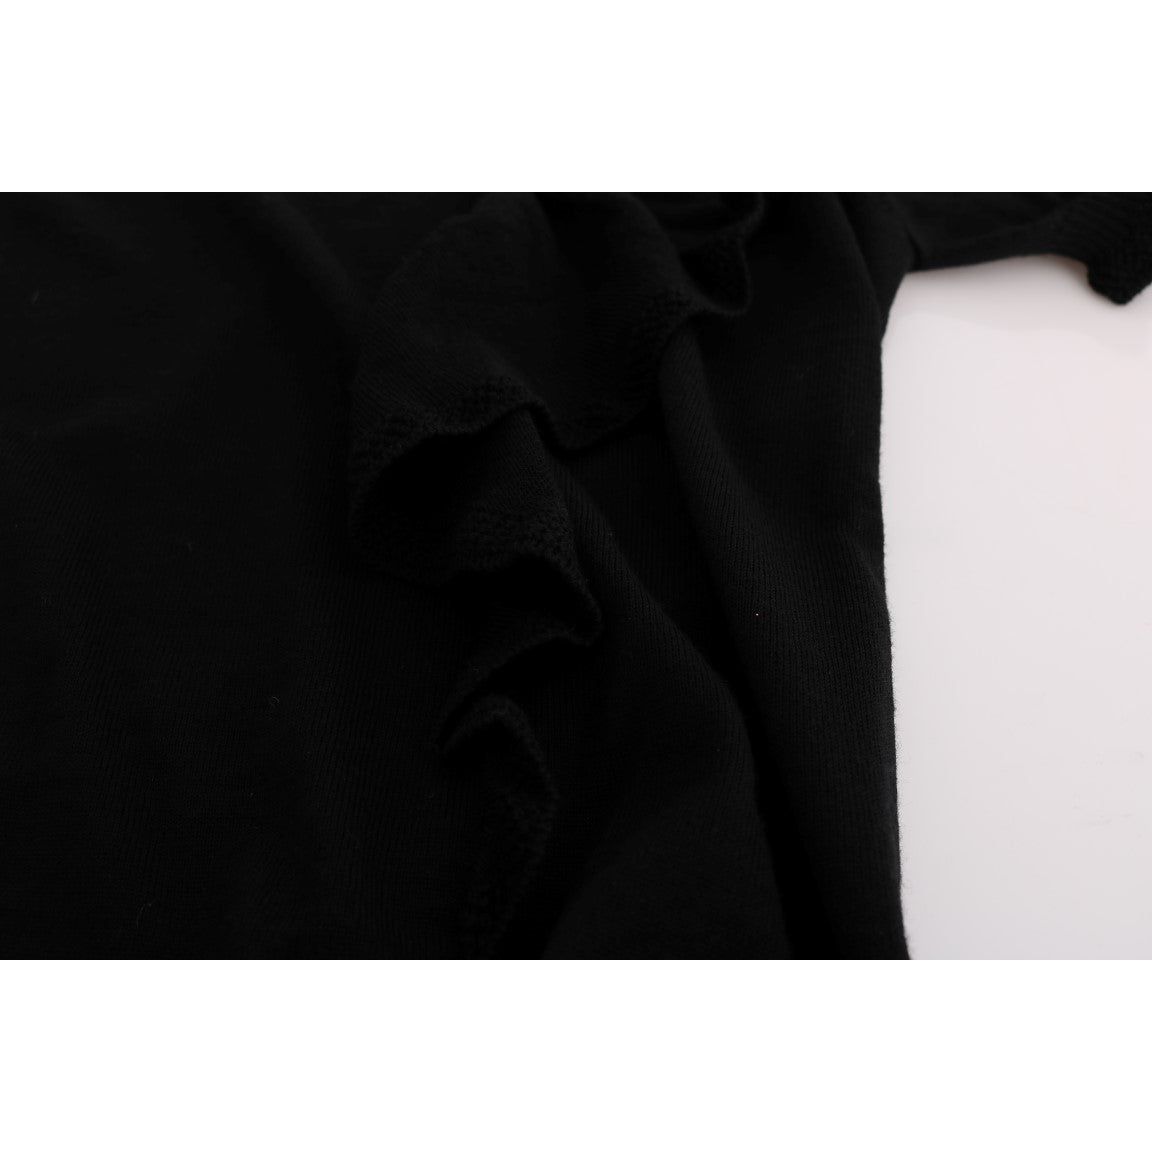 MARGHI LO' Elegant Black Lana Wool Top black-100-lana-wool-top-blouse-t-shirt